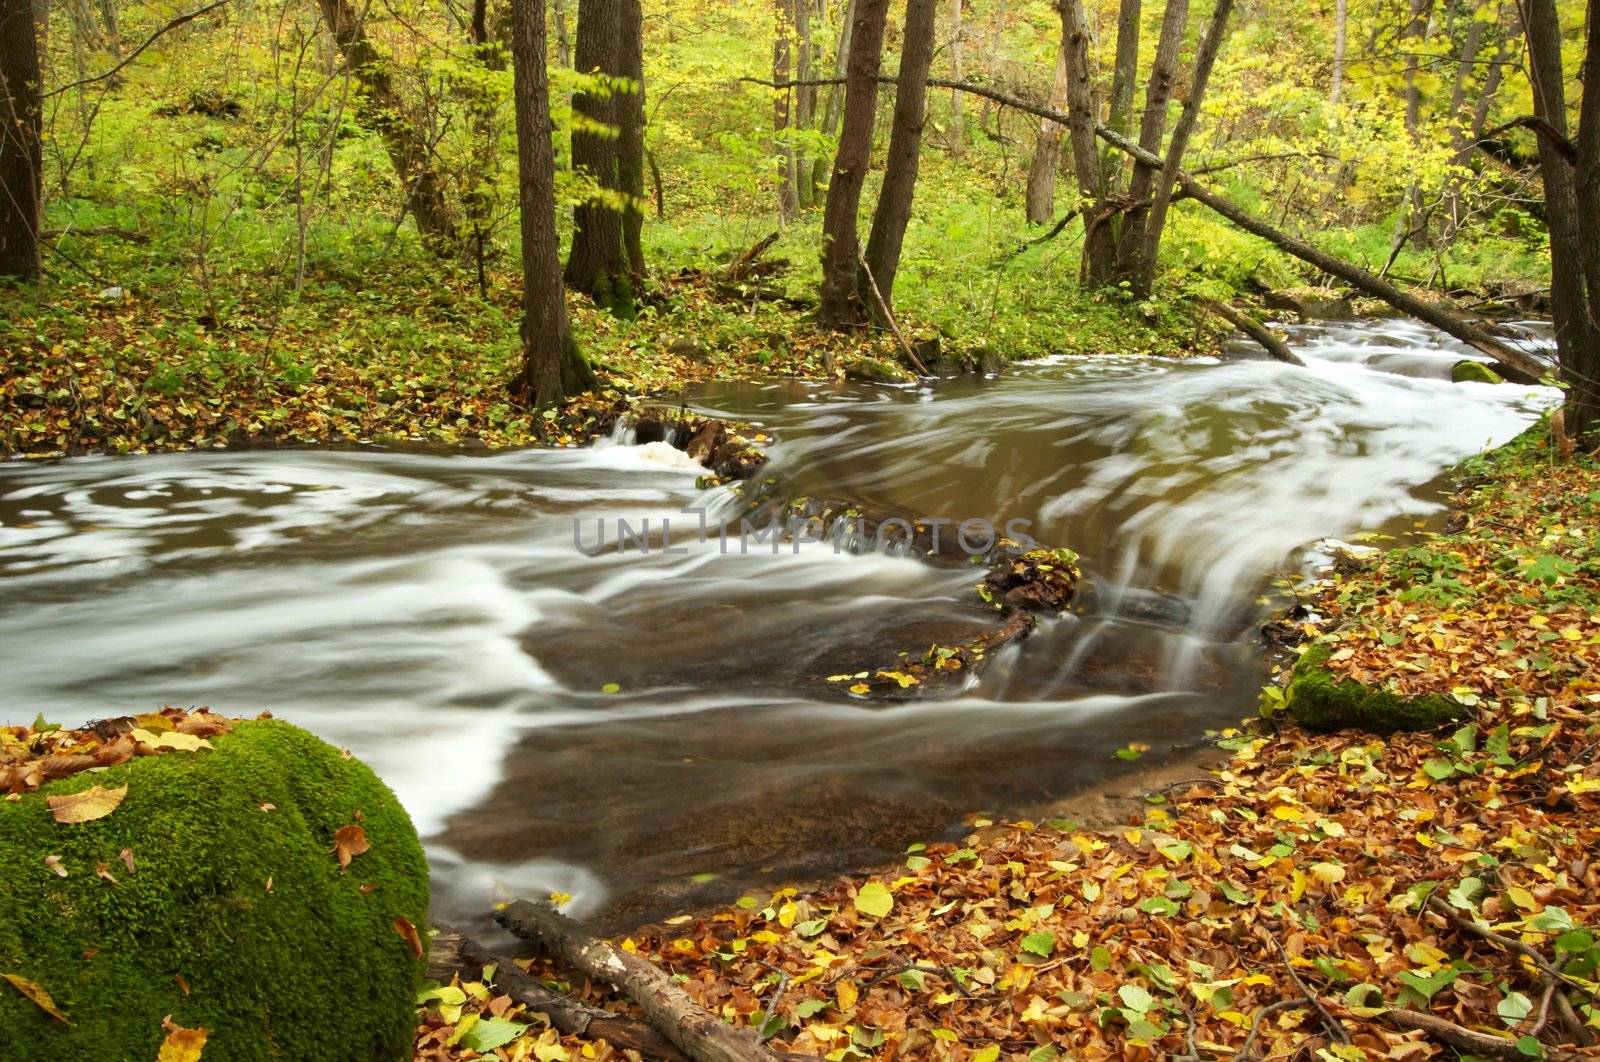 River amongst autumn trees by velkol